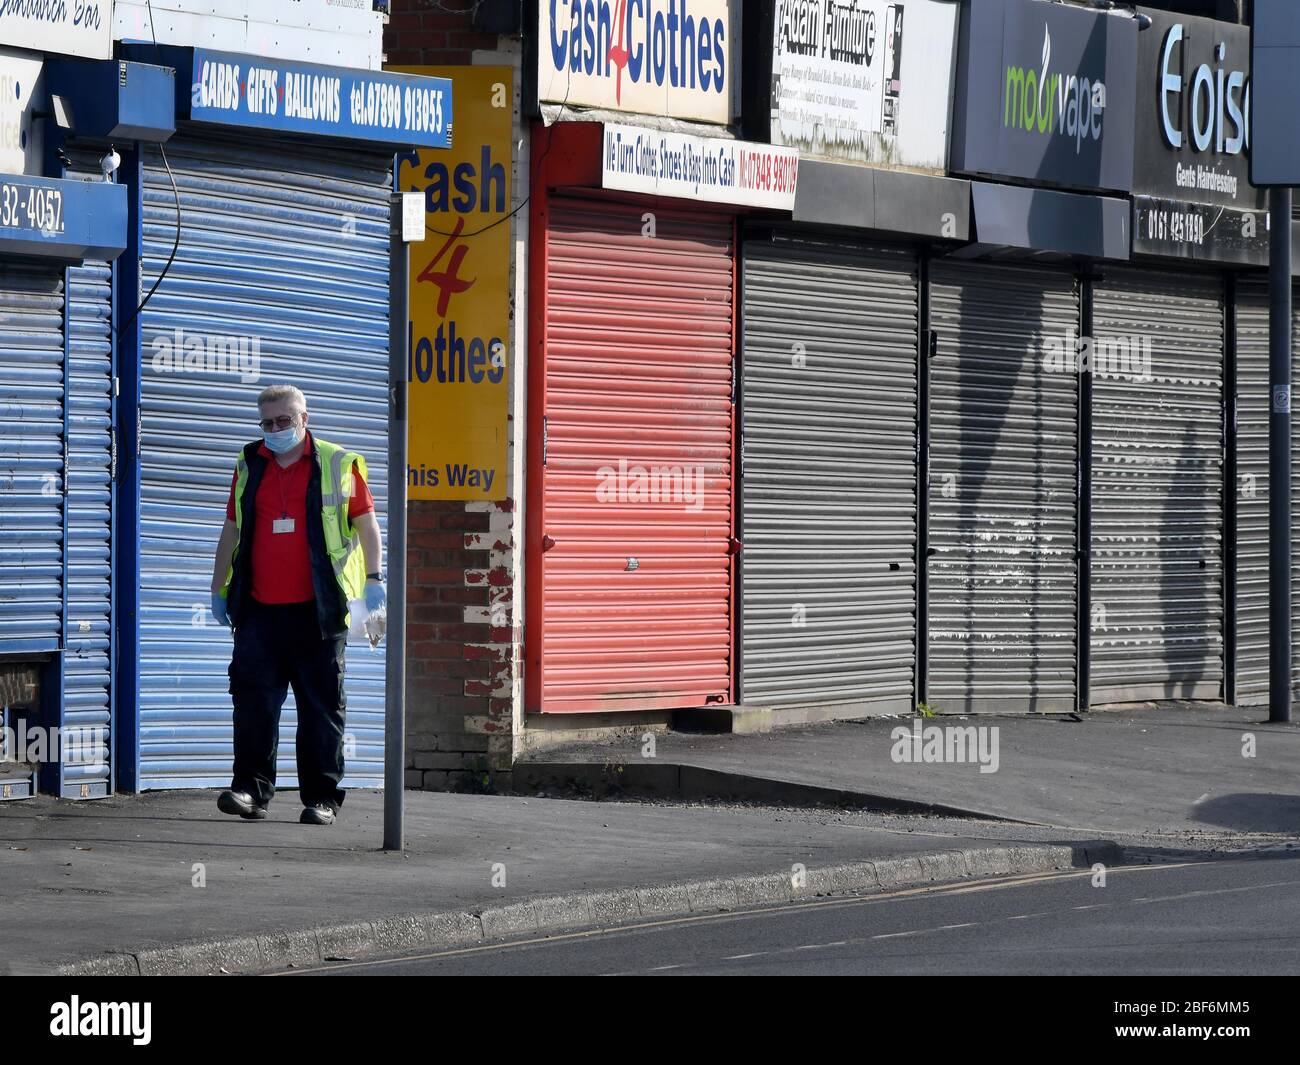 Manchester Angleterre 16 avril 2020. Une rangée de magasins fermés à vide et de petites entreprises à Stockport qui sont fermés à cause du verrouillage de Coronavirus. Photo de Howard Walker / Alay News Live. Banque D'Images